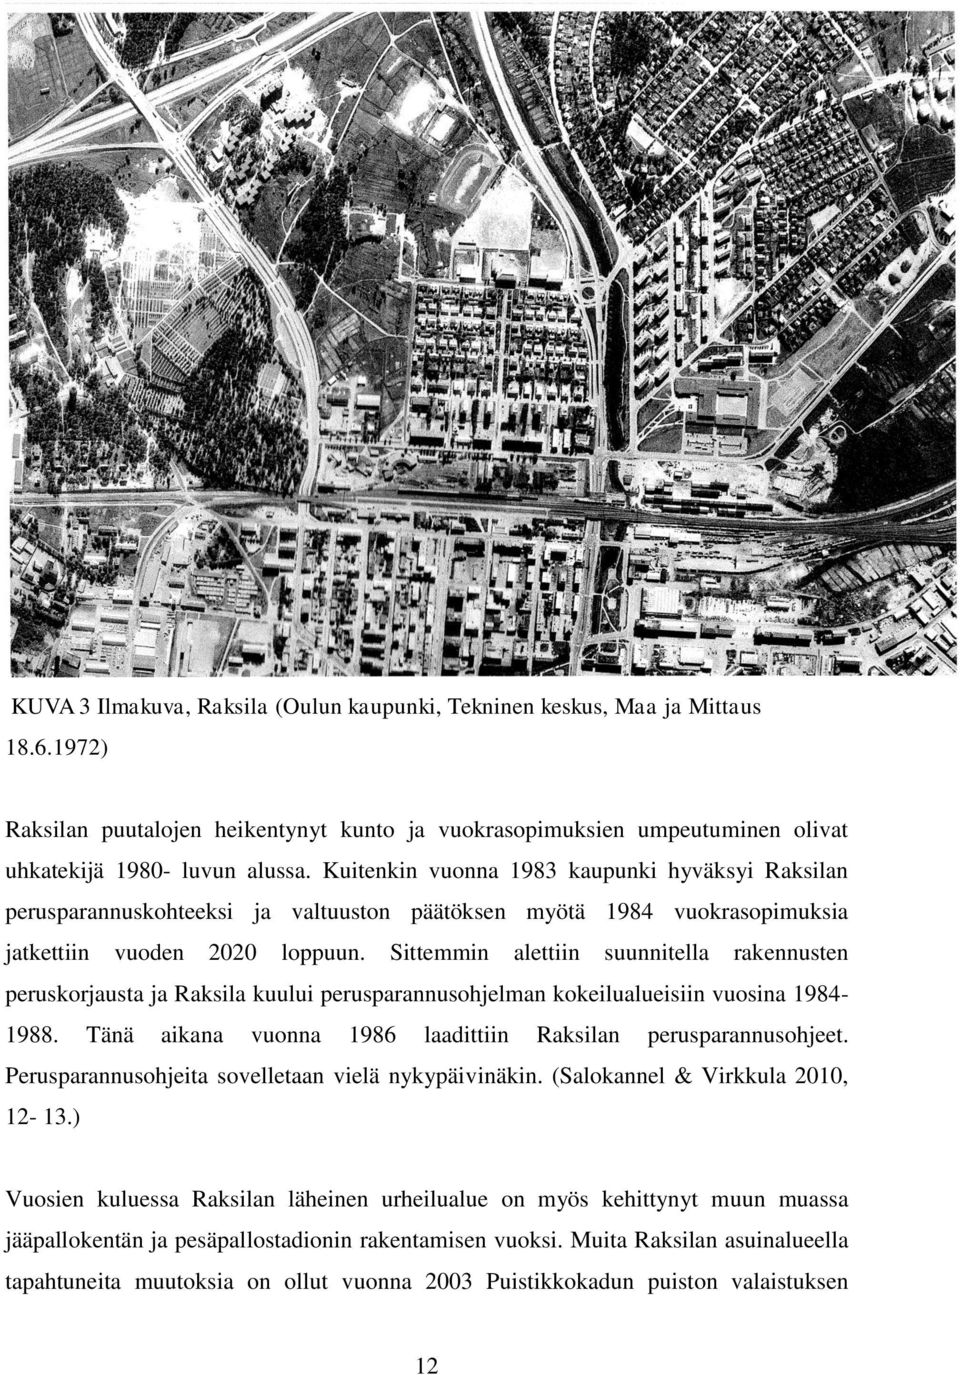 Sittemmin alettiin suunnitella rakennusten peruskorjausta ja Raksila kuului perusparannusohjelman kokeilualueisiin vuosina 1984-1988. Tänä aikana vuonna 1986 laadittiin Raksilan perusparannusohjeet.